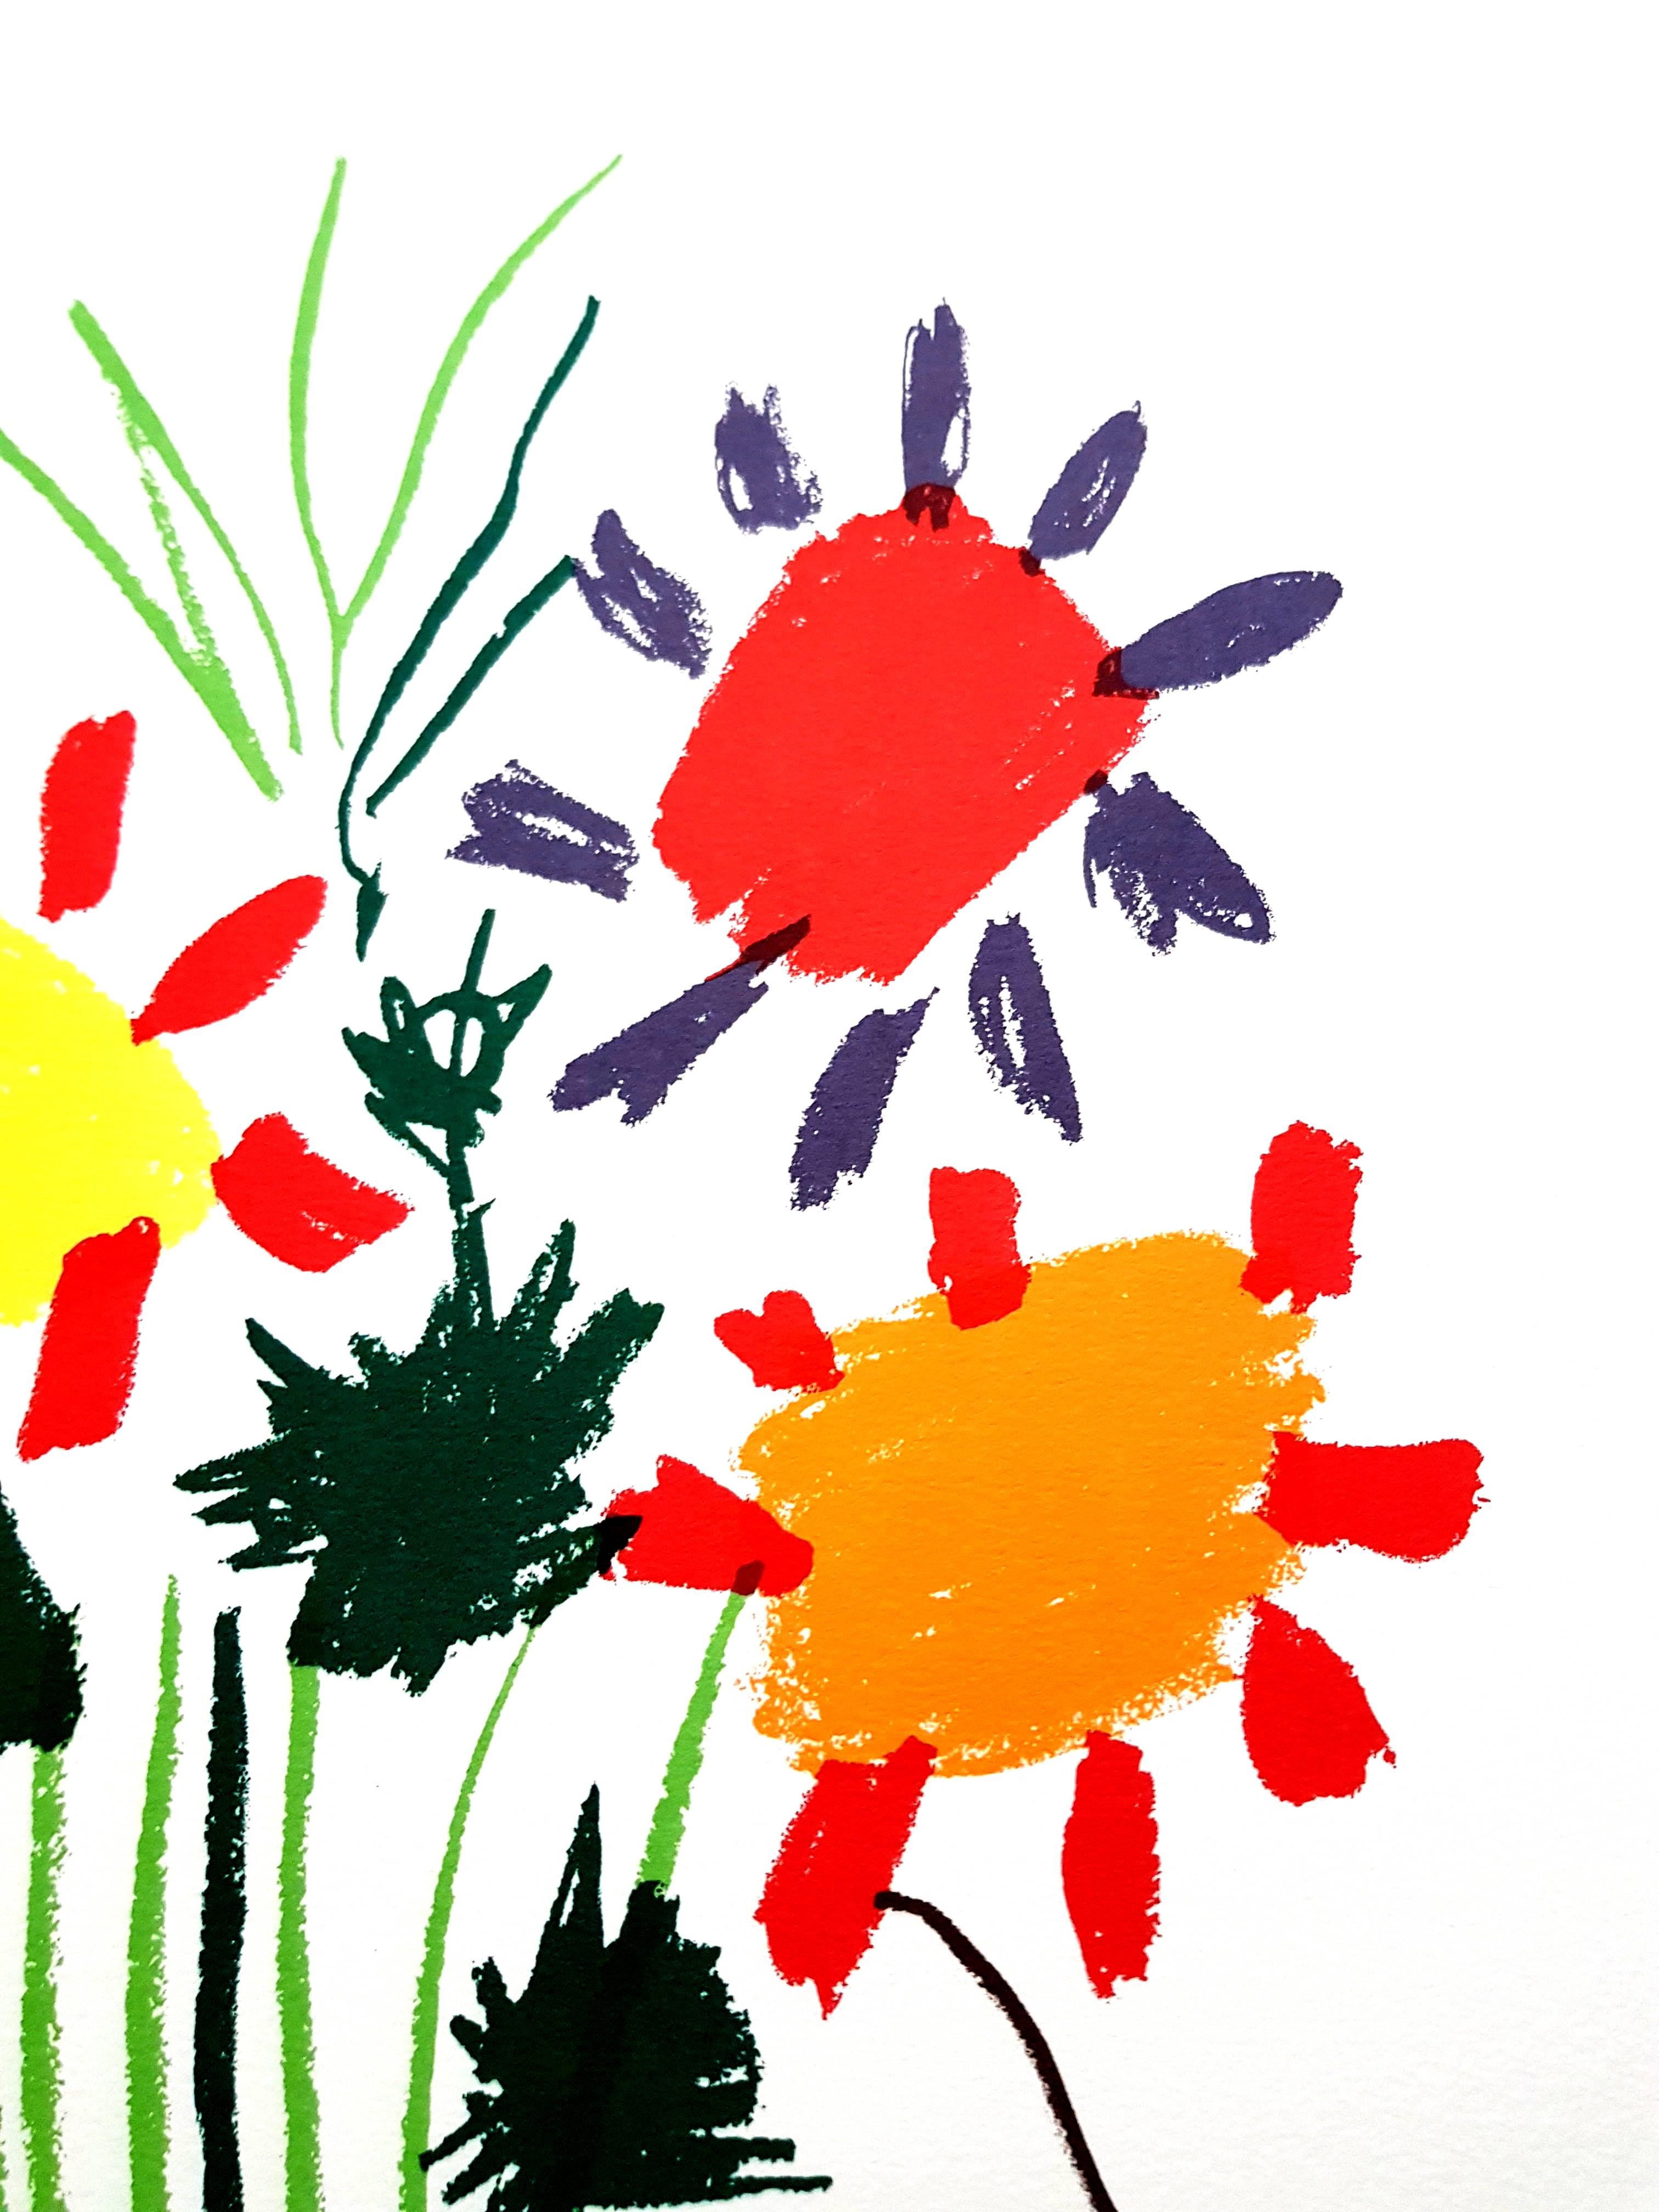 D'après PABLO PICASSO (1881-1973)
Fleurs colorées
1958
Dimensions : 65 x 50 cm
Signé et daté dans la plaque
Edition Succession Picasso, Paris (édition de reproduction posthume)
Editions de la Paix